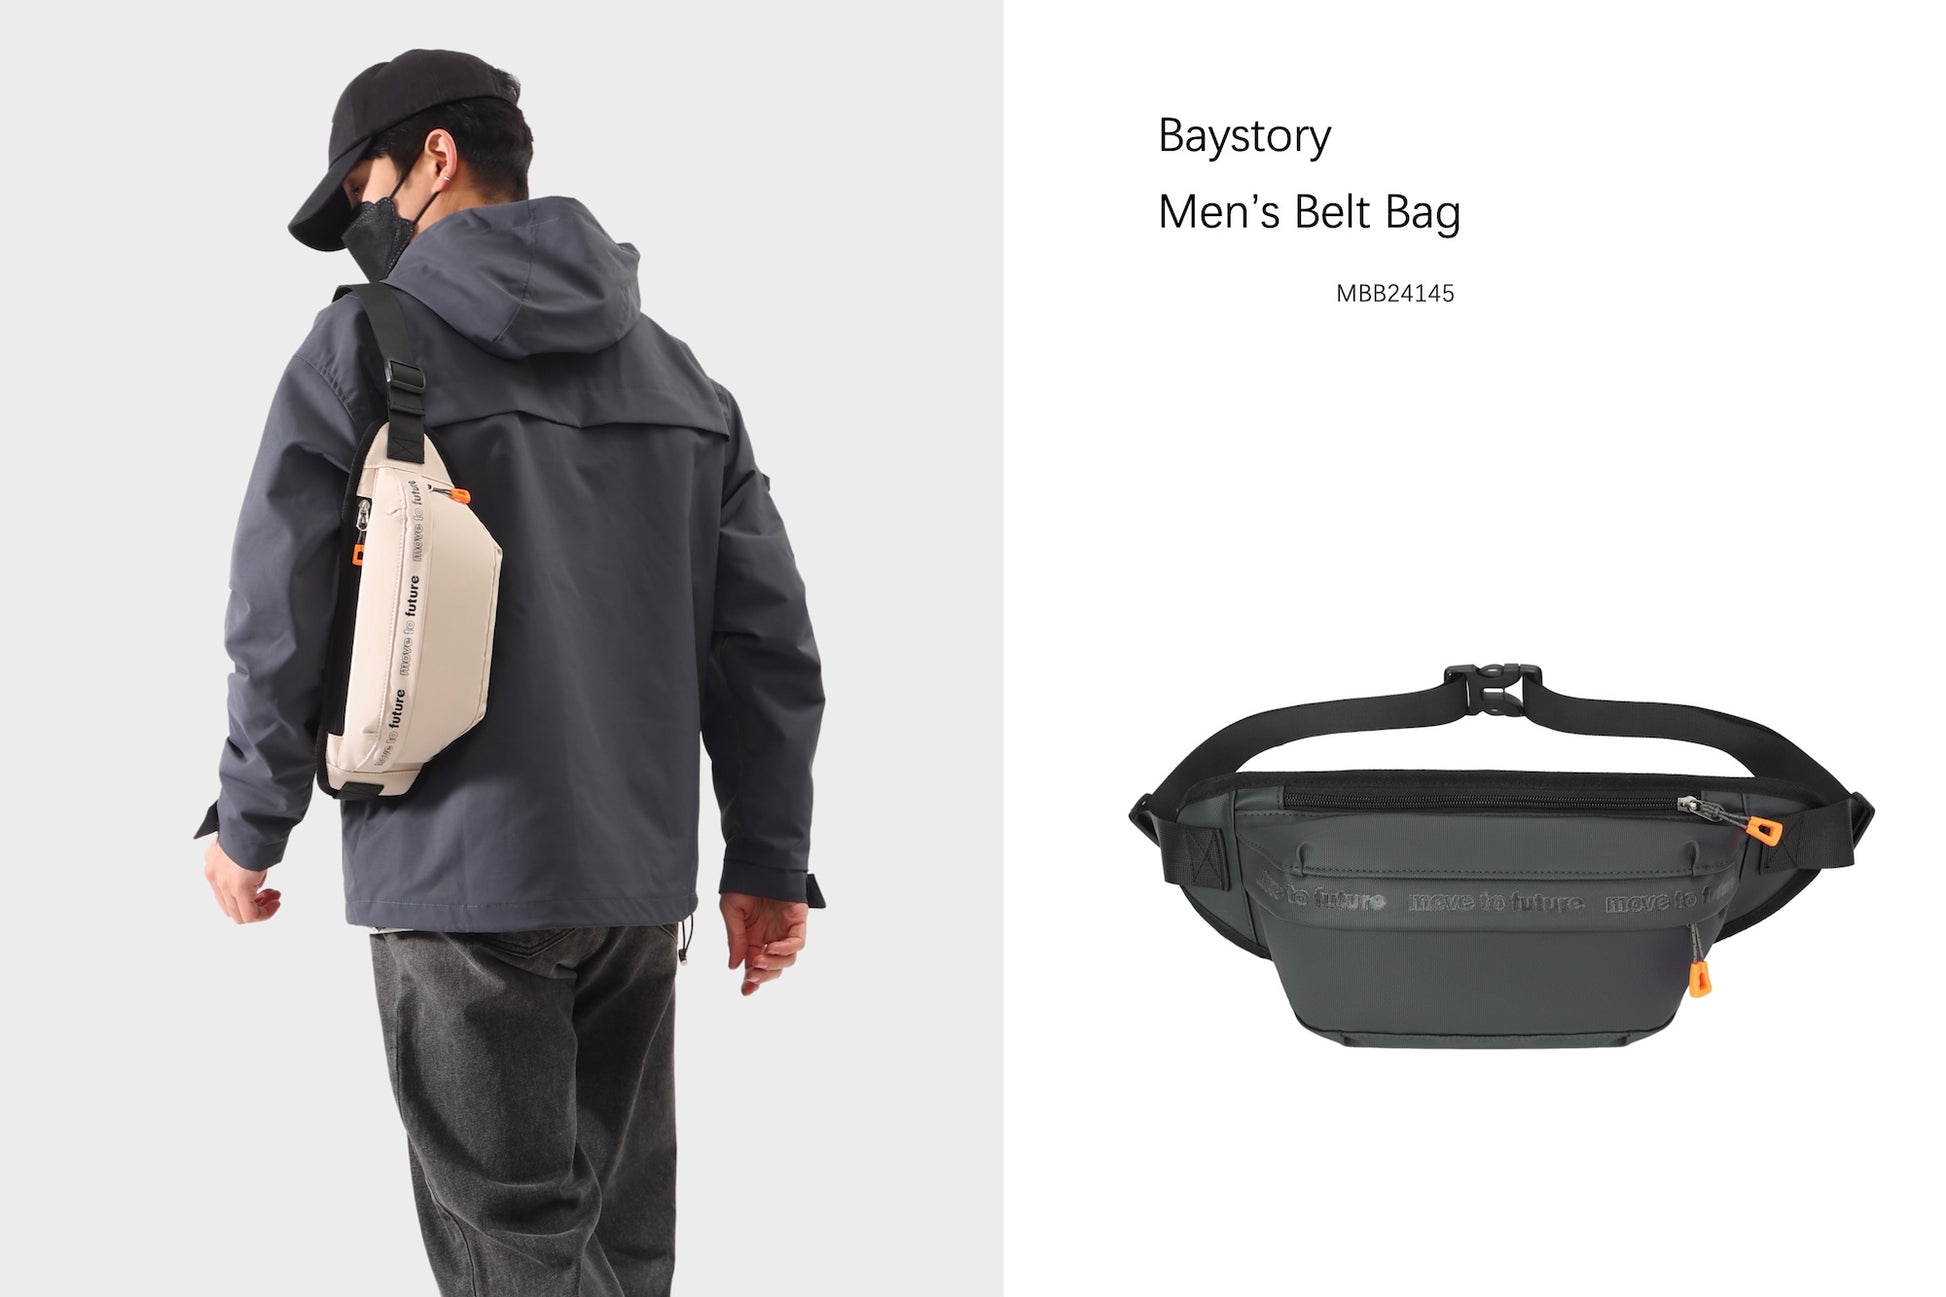 Men's Belt Bag MBB24145 - Baystory